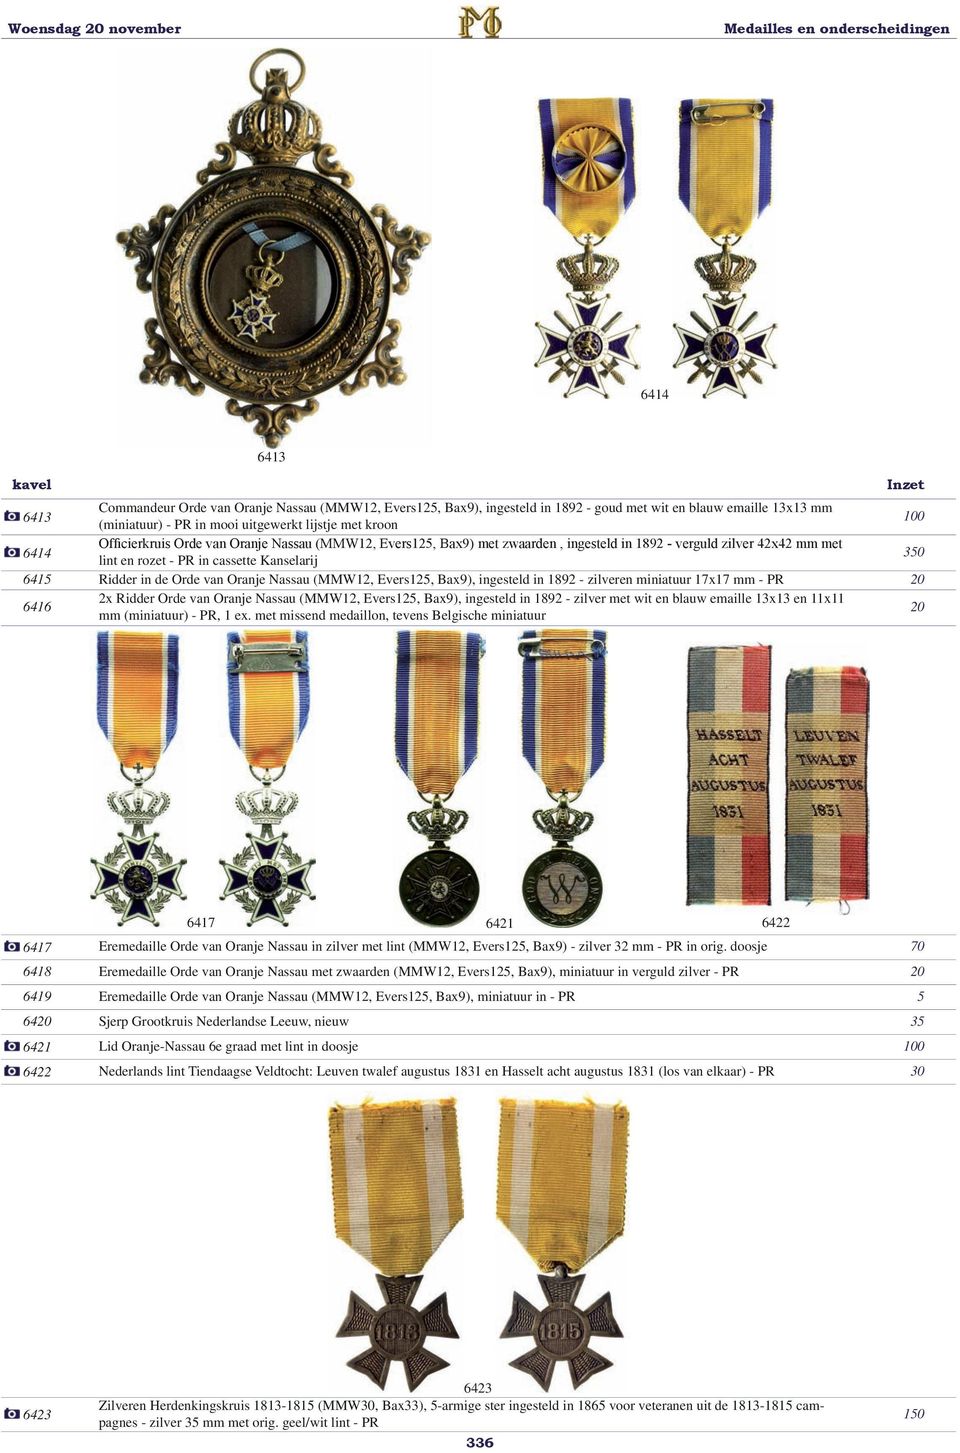 Nassau (MMW12, Evers1, Bax9), ingesteld in 1892 - zilveren miniatuur 17x17 mm - PR 20 6416 2x Ridder Orde van Oranje Nassau (MMW12, Evers1, Bax9), ingesteld in 1892 - zilver met wit en blauw emaille